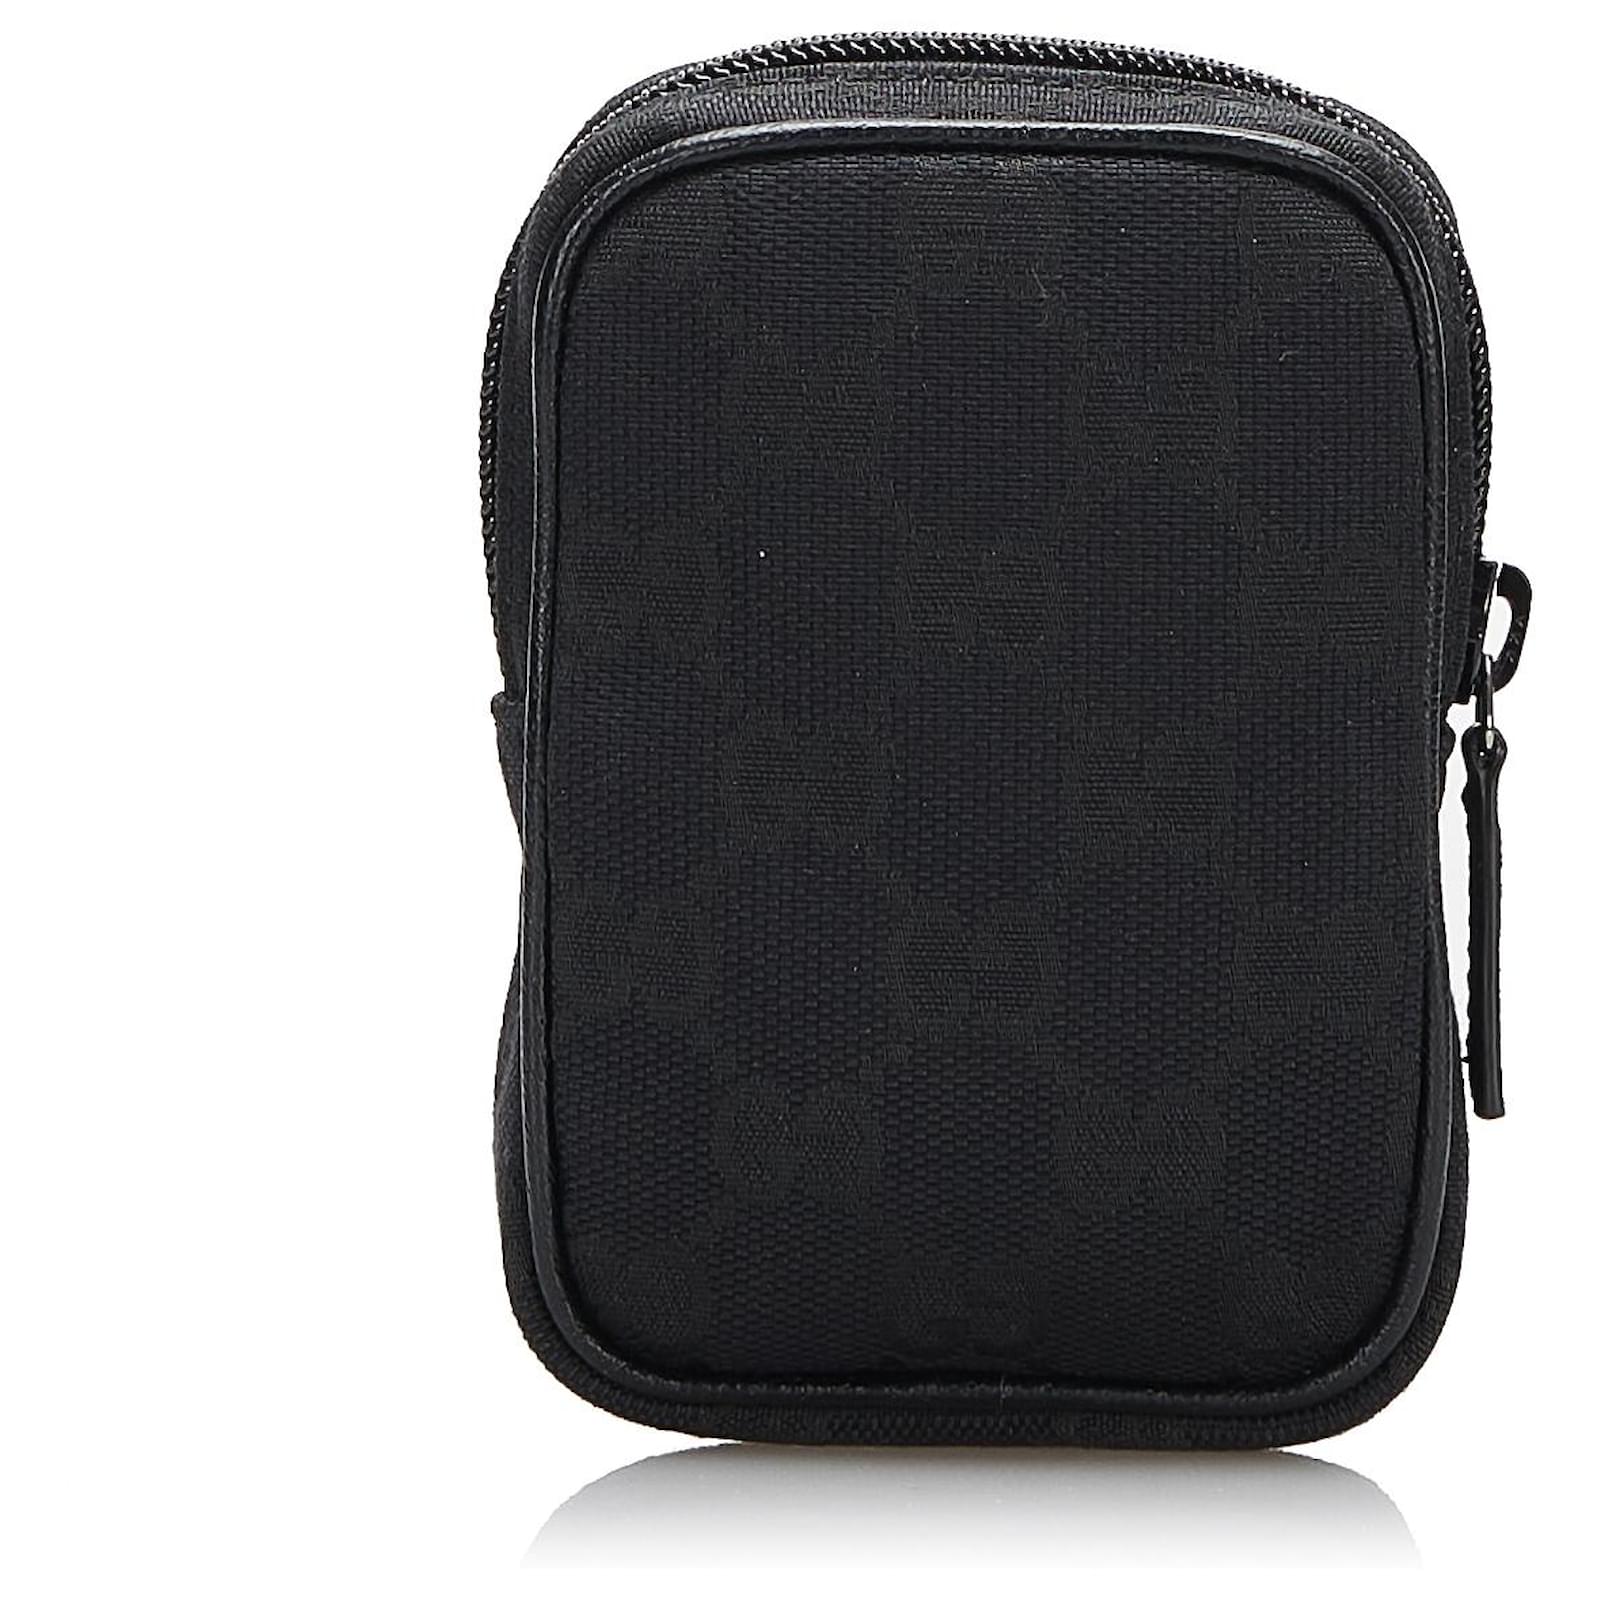 Gucci GG Web Cigarette Case - Black Travel, Accessories - GUC110001